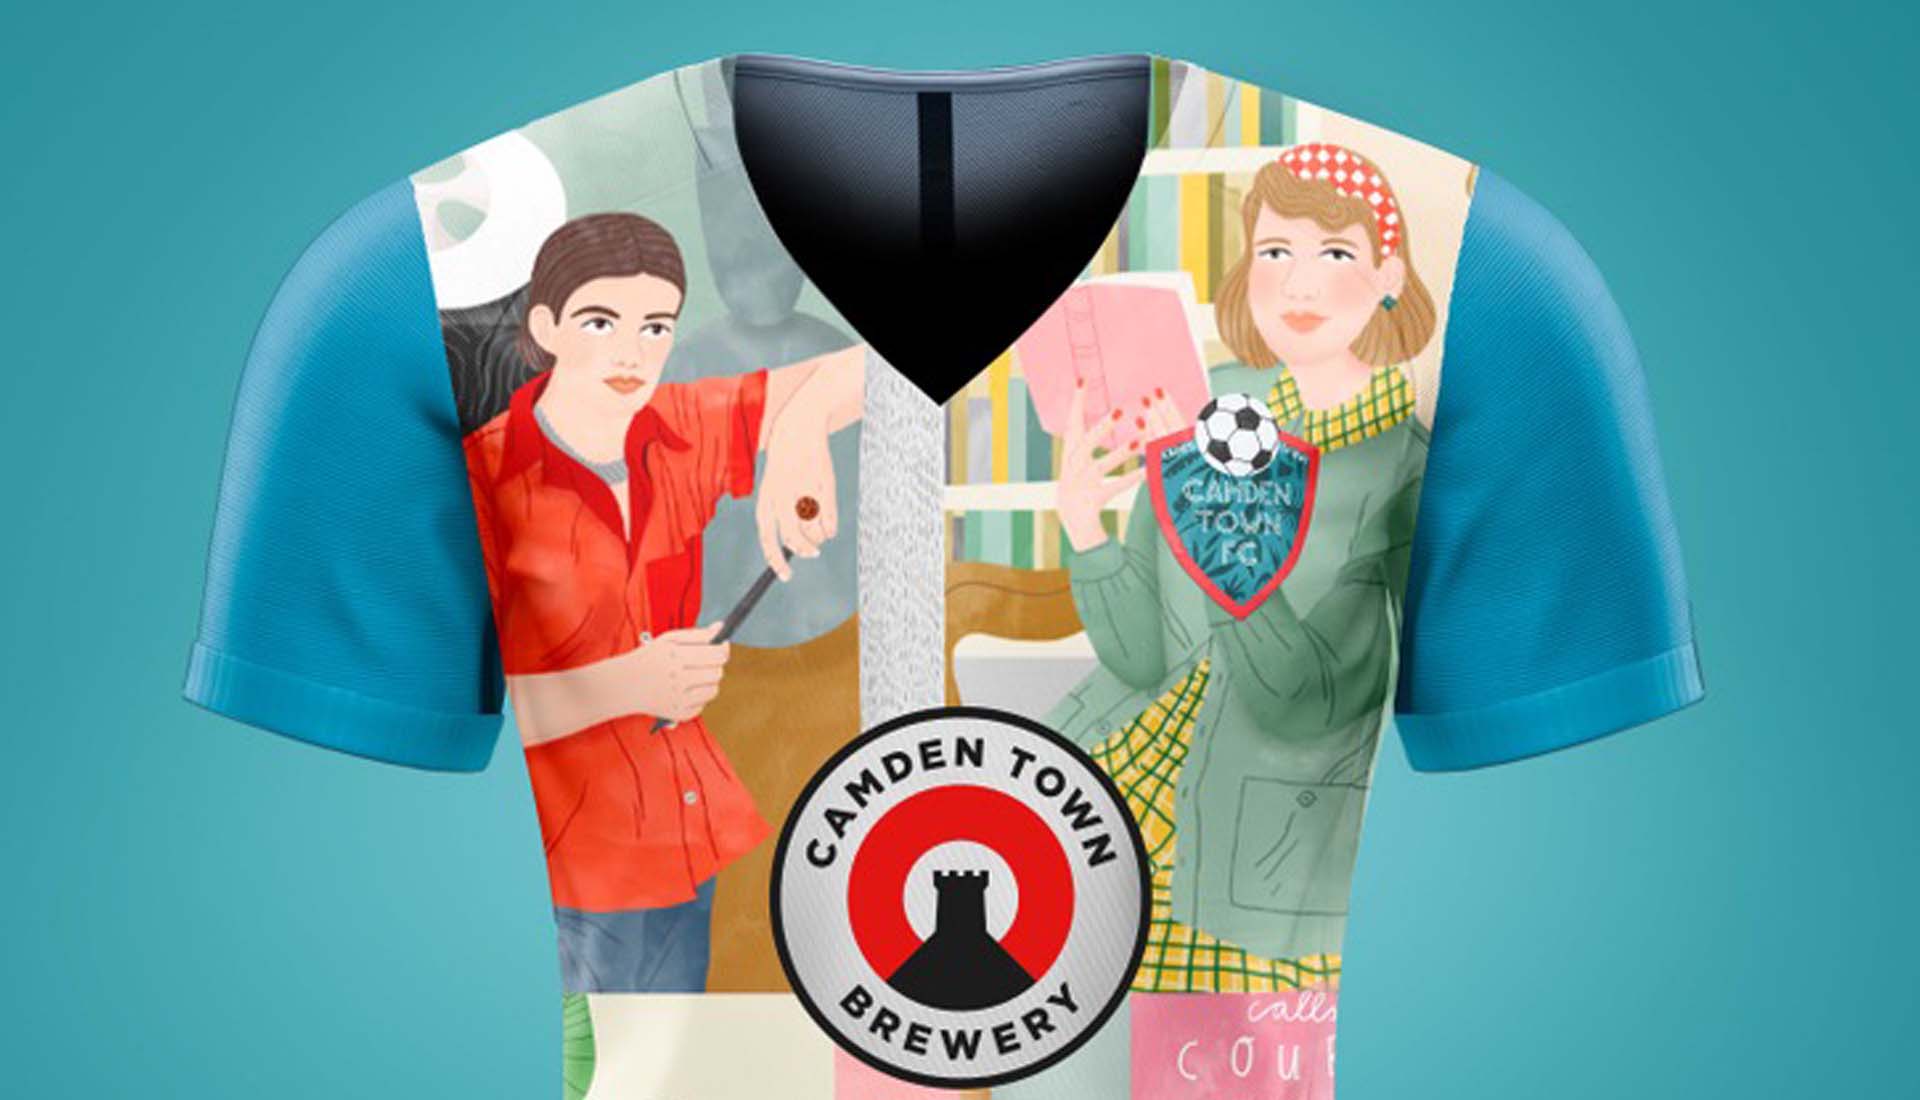 camden brewery t shirt